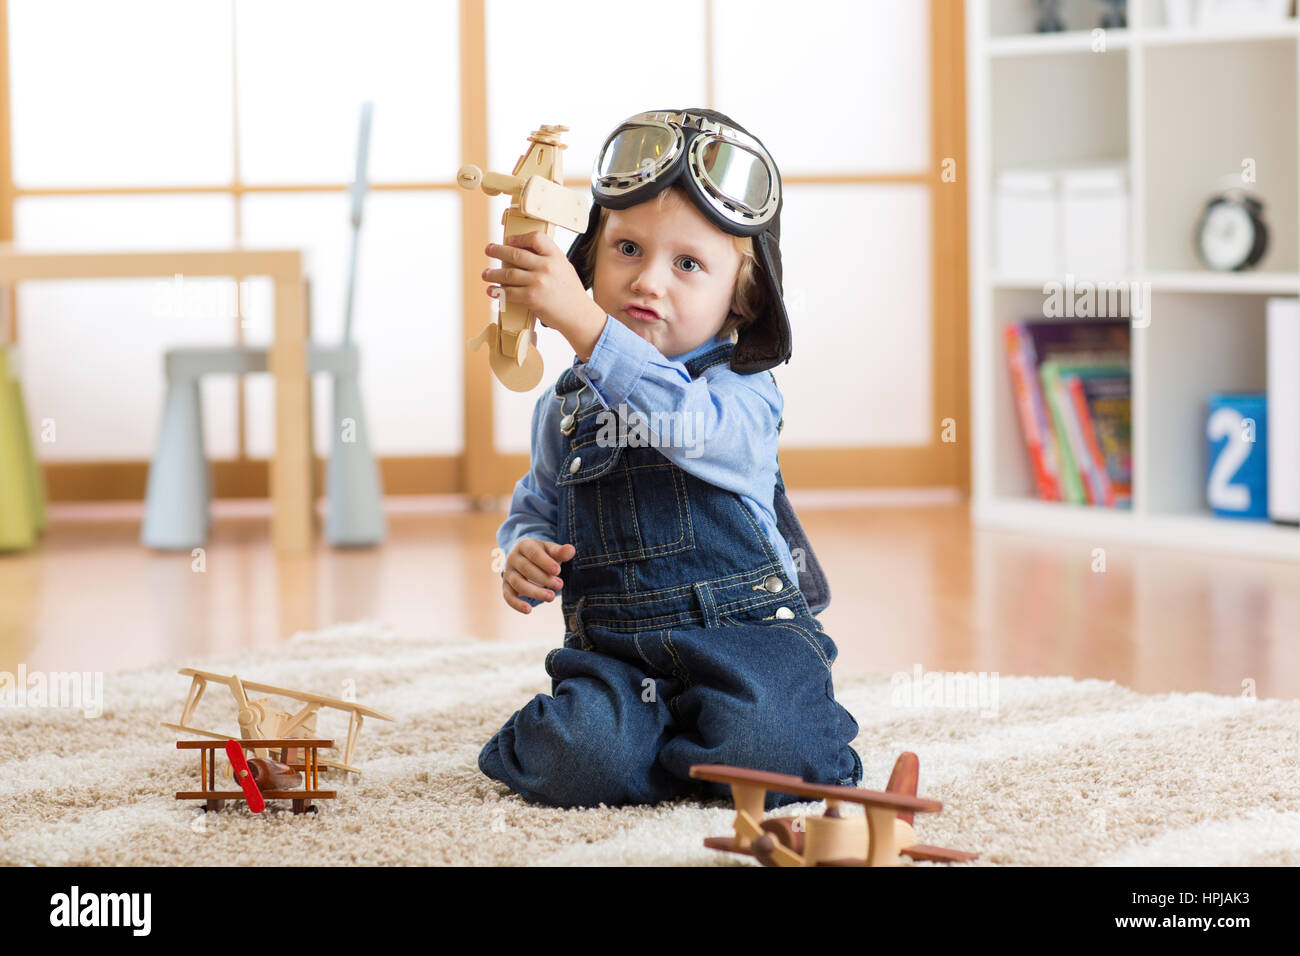 Aviatore pilota bambino gioca con il giocattolo di legno aerei sul pavimento nella sua stanza Foto Stock